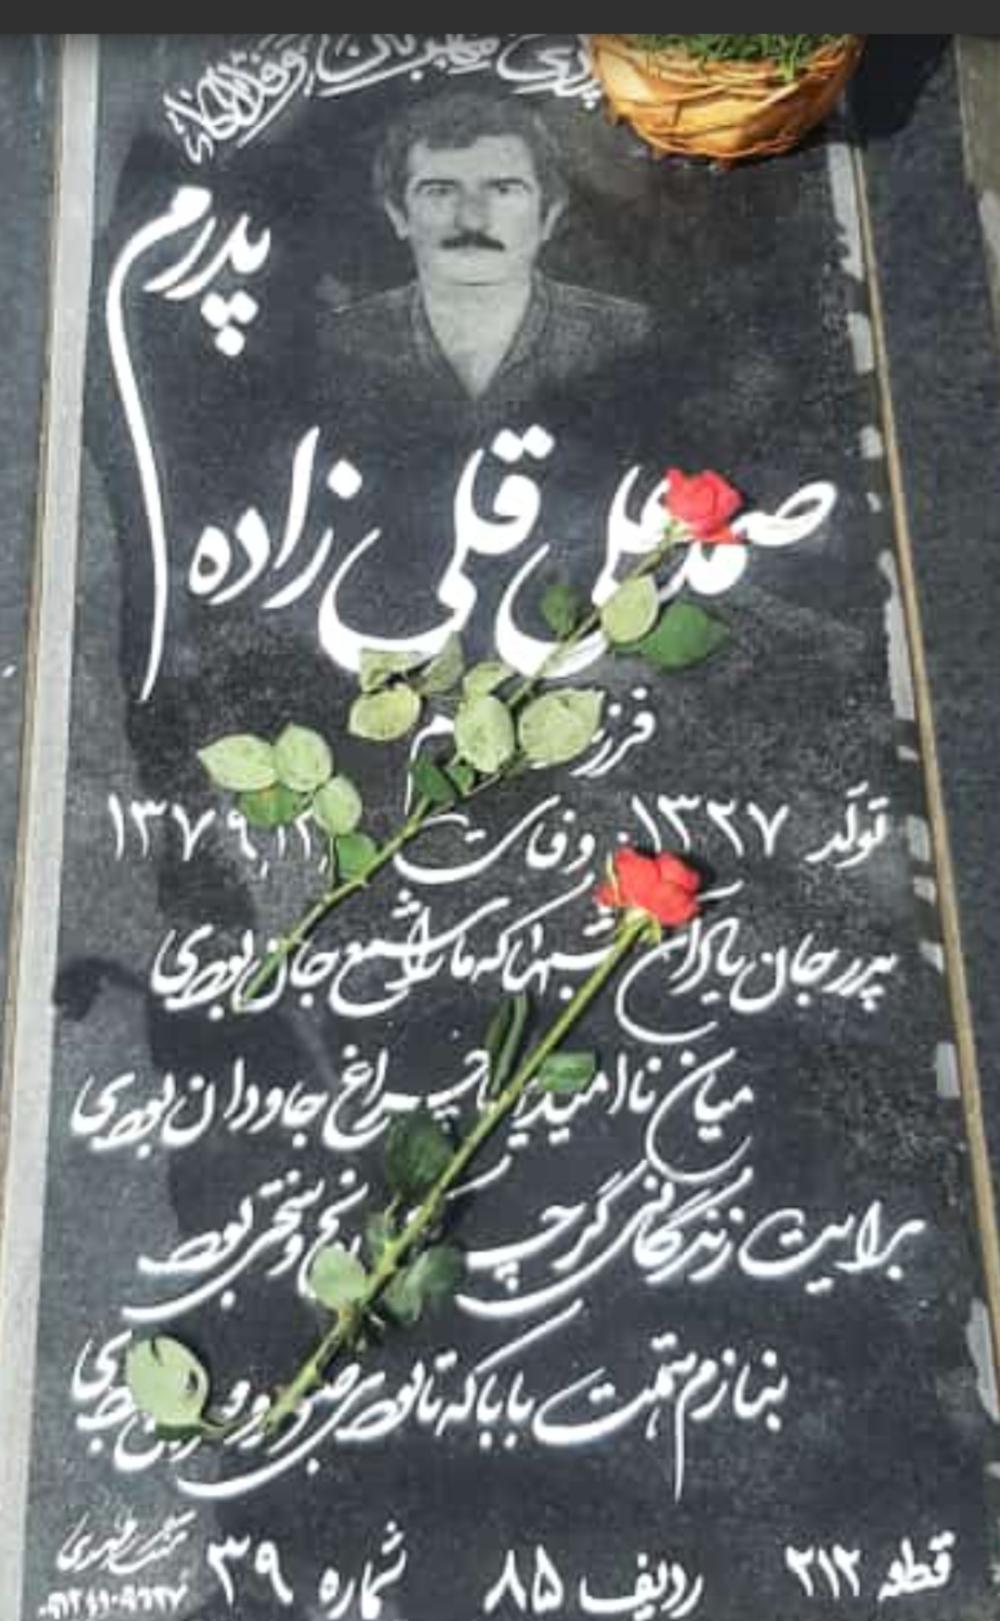 یادبود شادروان پدر ی مهربان صمد علی قلی زاده در اباد